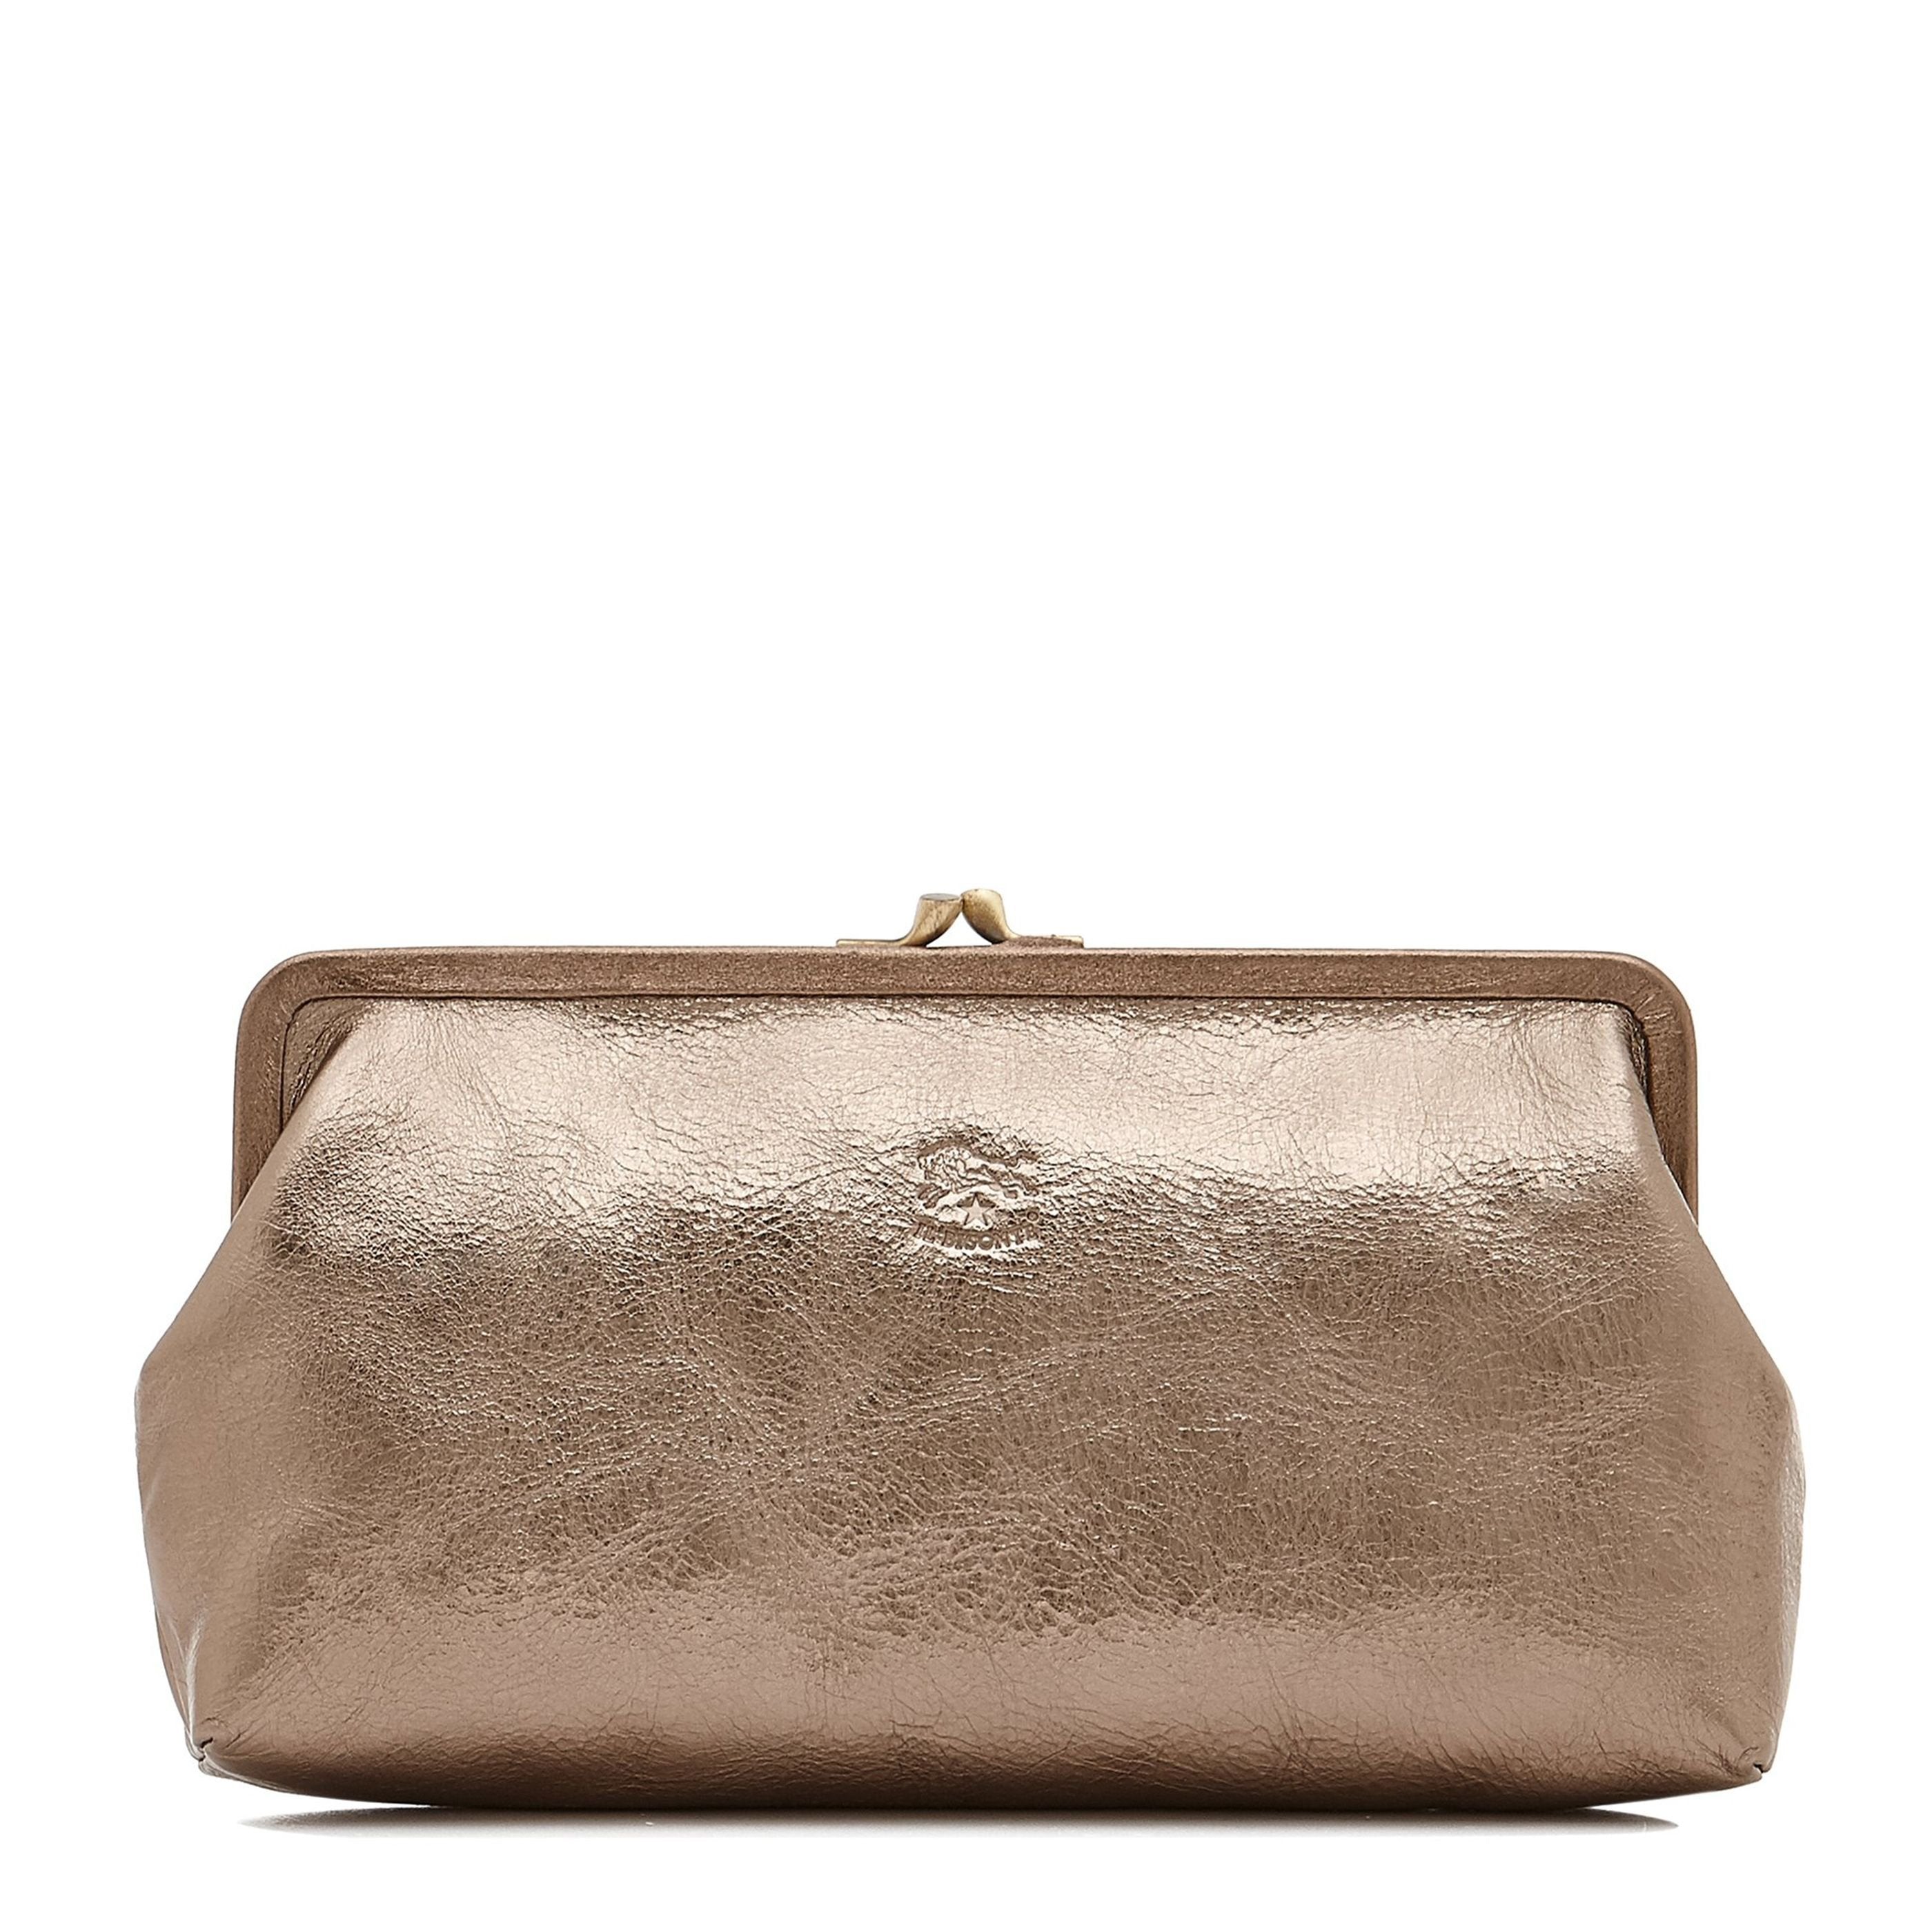 Manuela | Women's clutch bag in metallic leather color metallic bronze